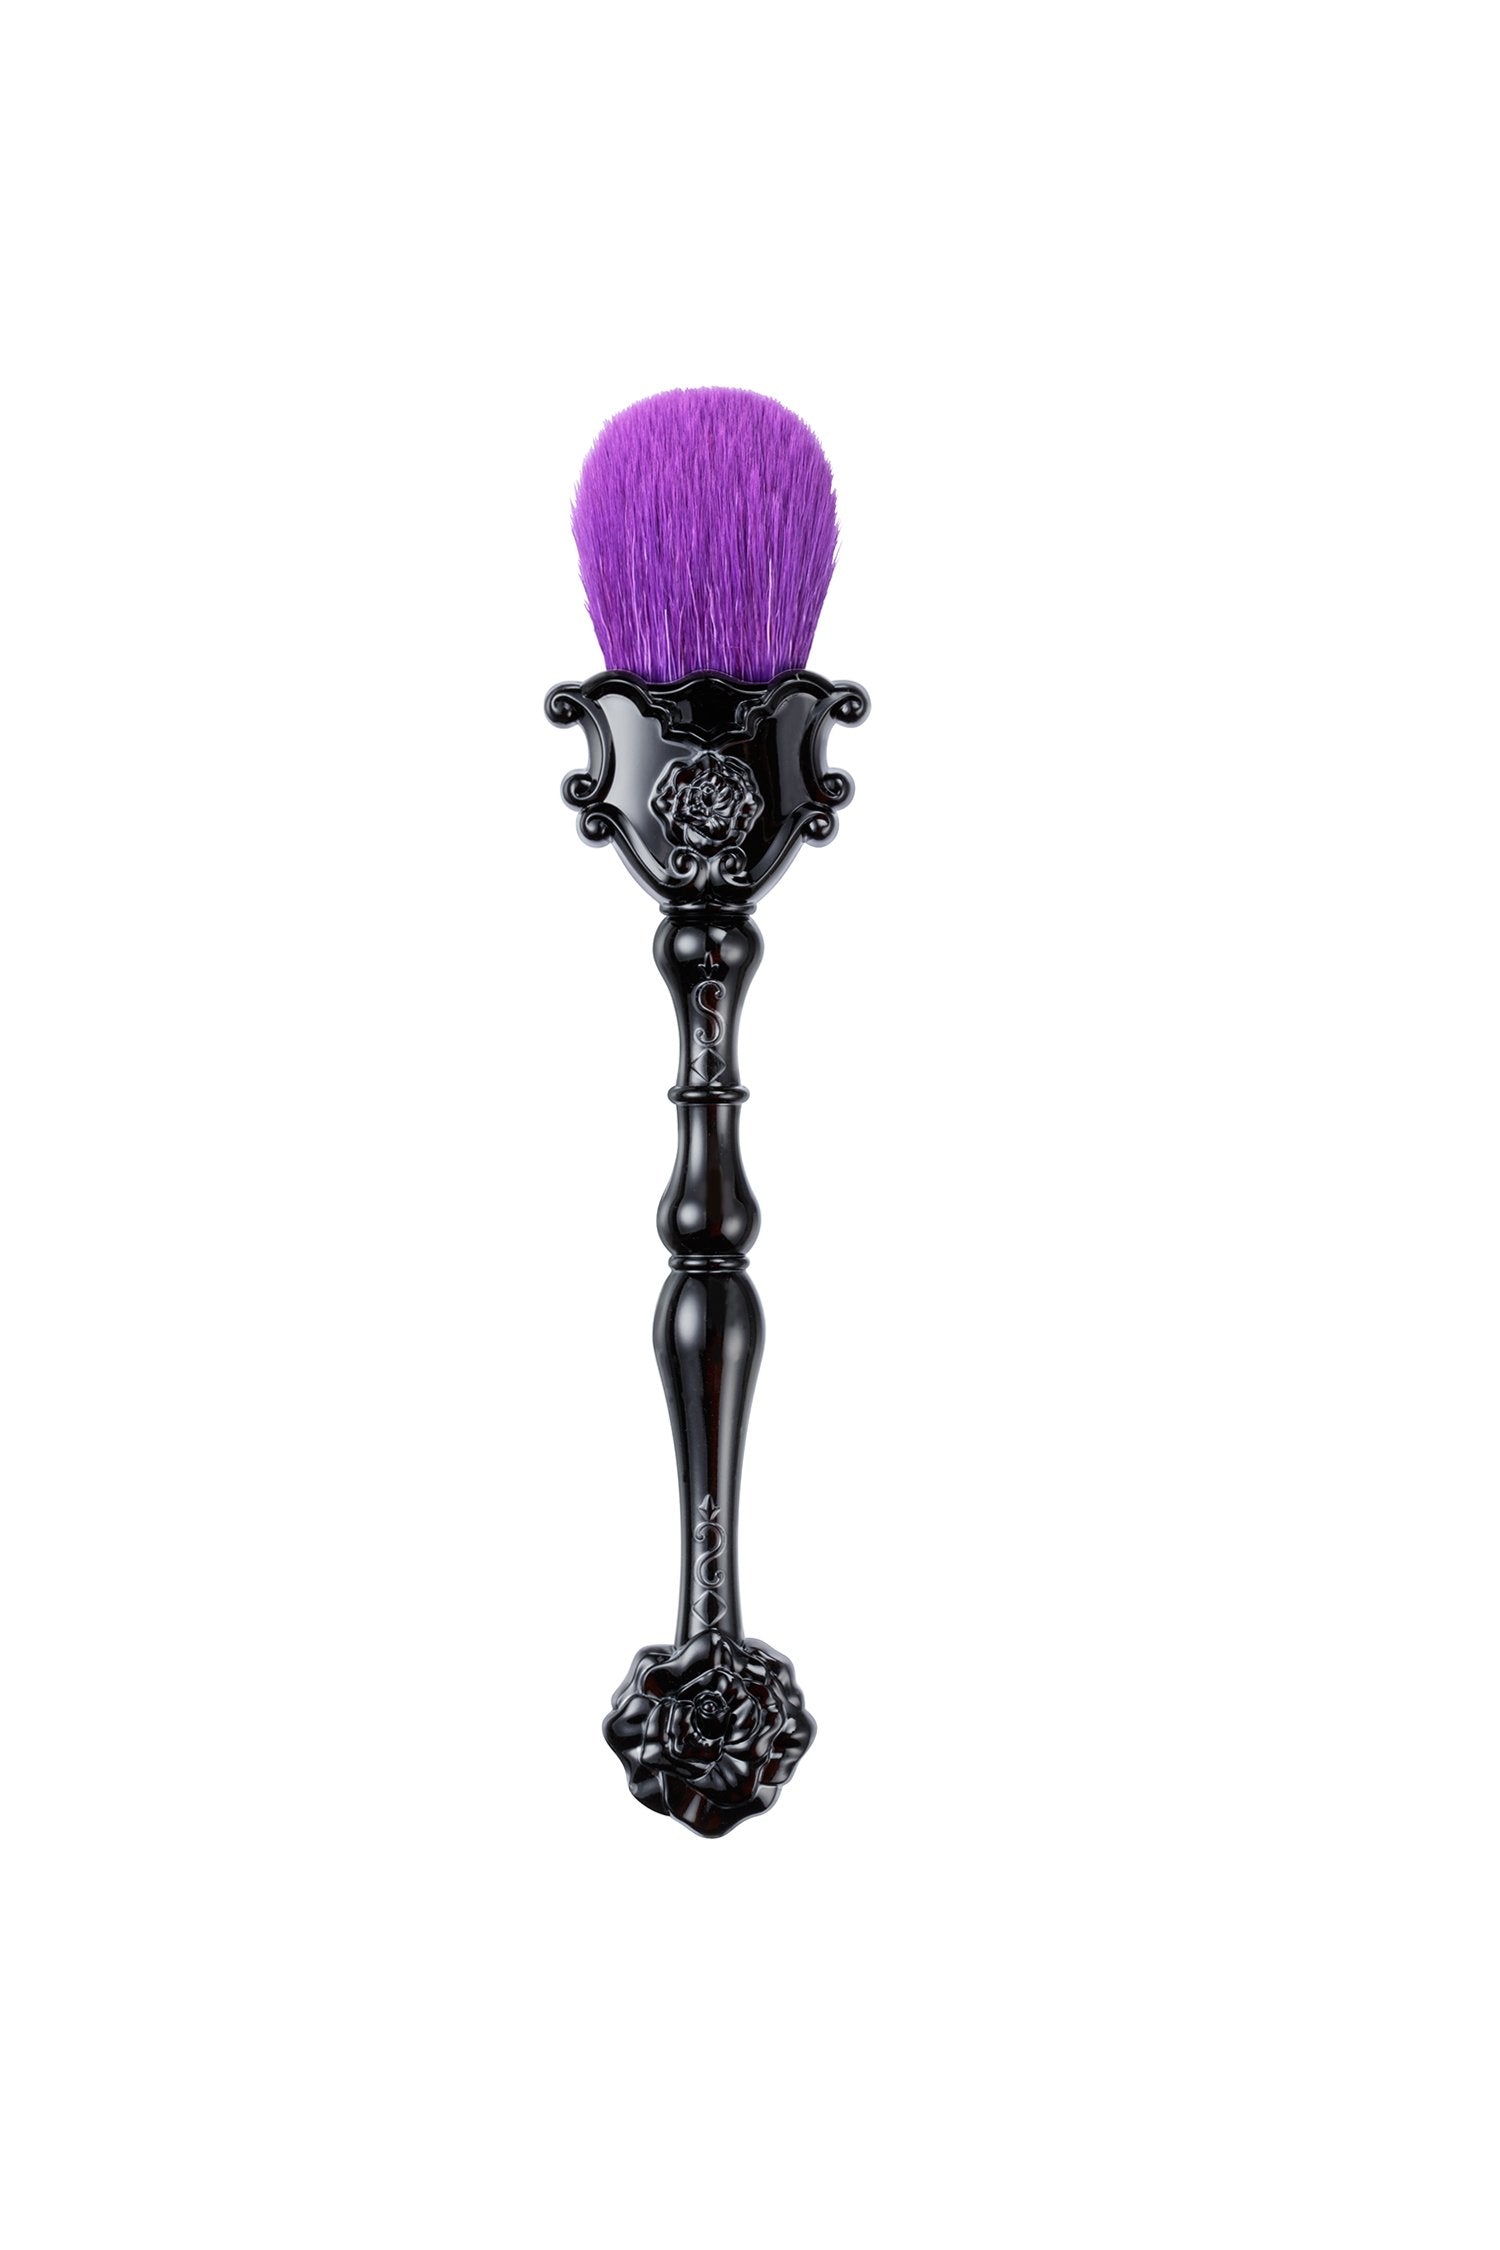 Vanity Face Brush, un pennello viola su un elegante supporto alto con un disegno floreale in rilievo